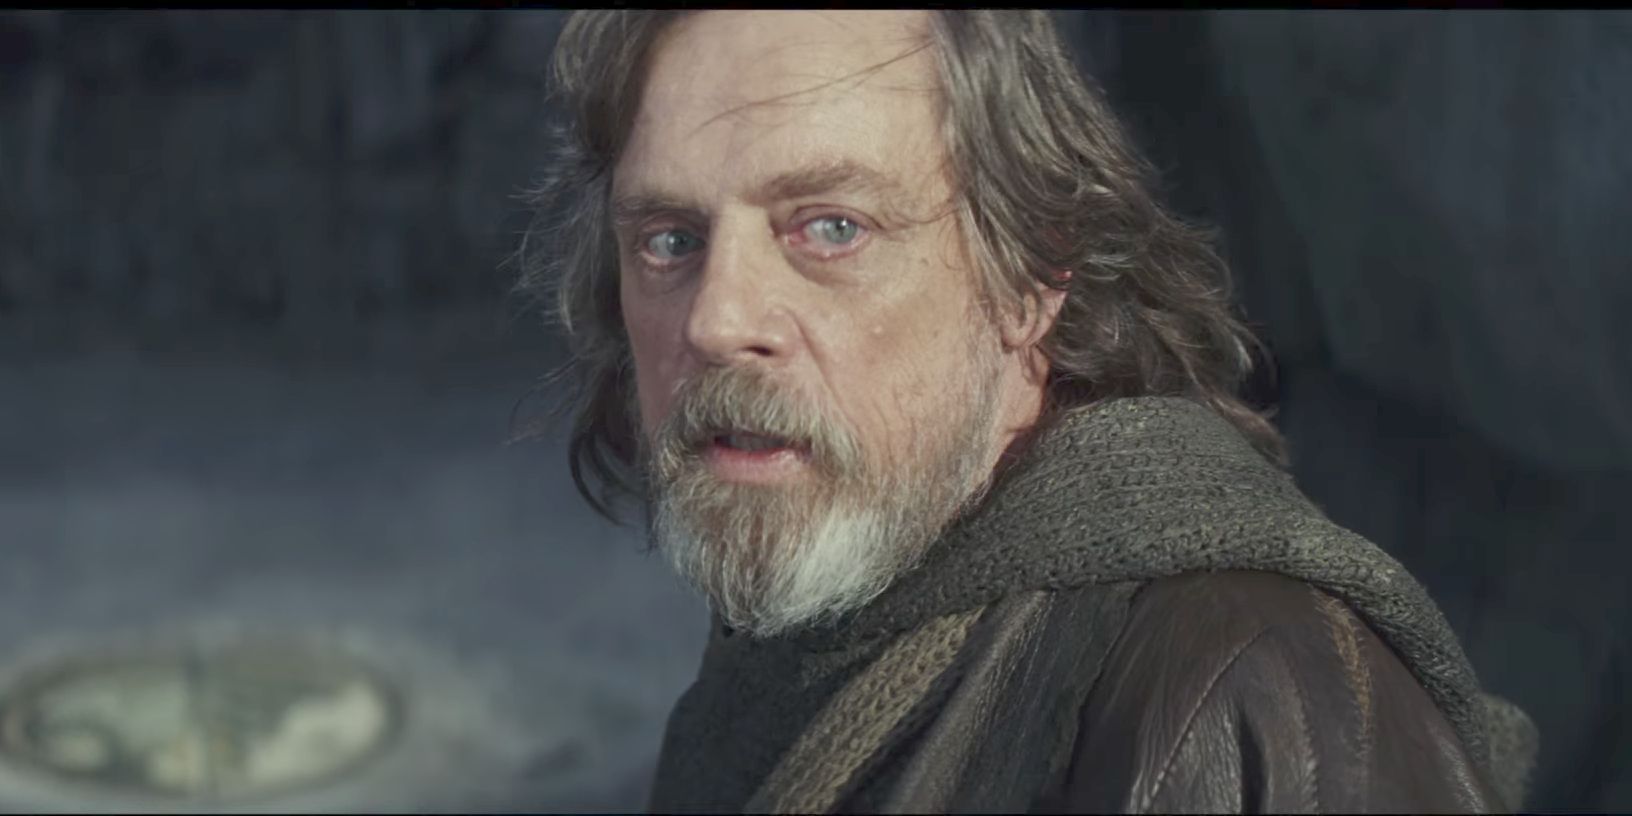 Mark Hamill as Luke Skywalker looking back near the end of The Last Jedi